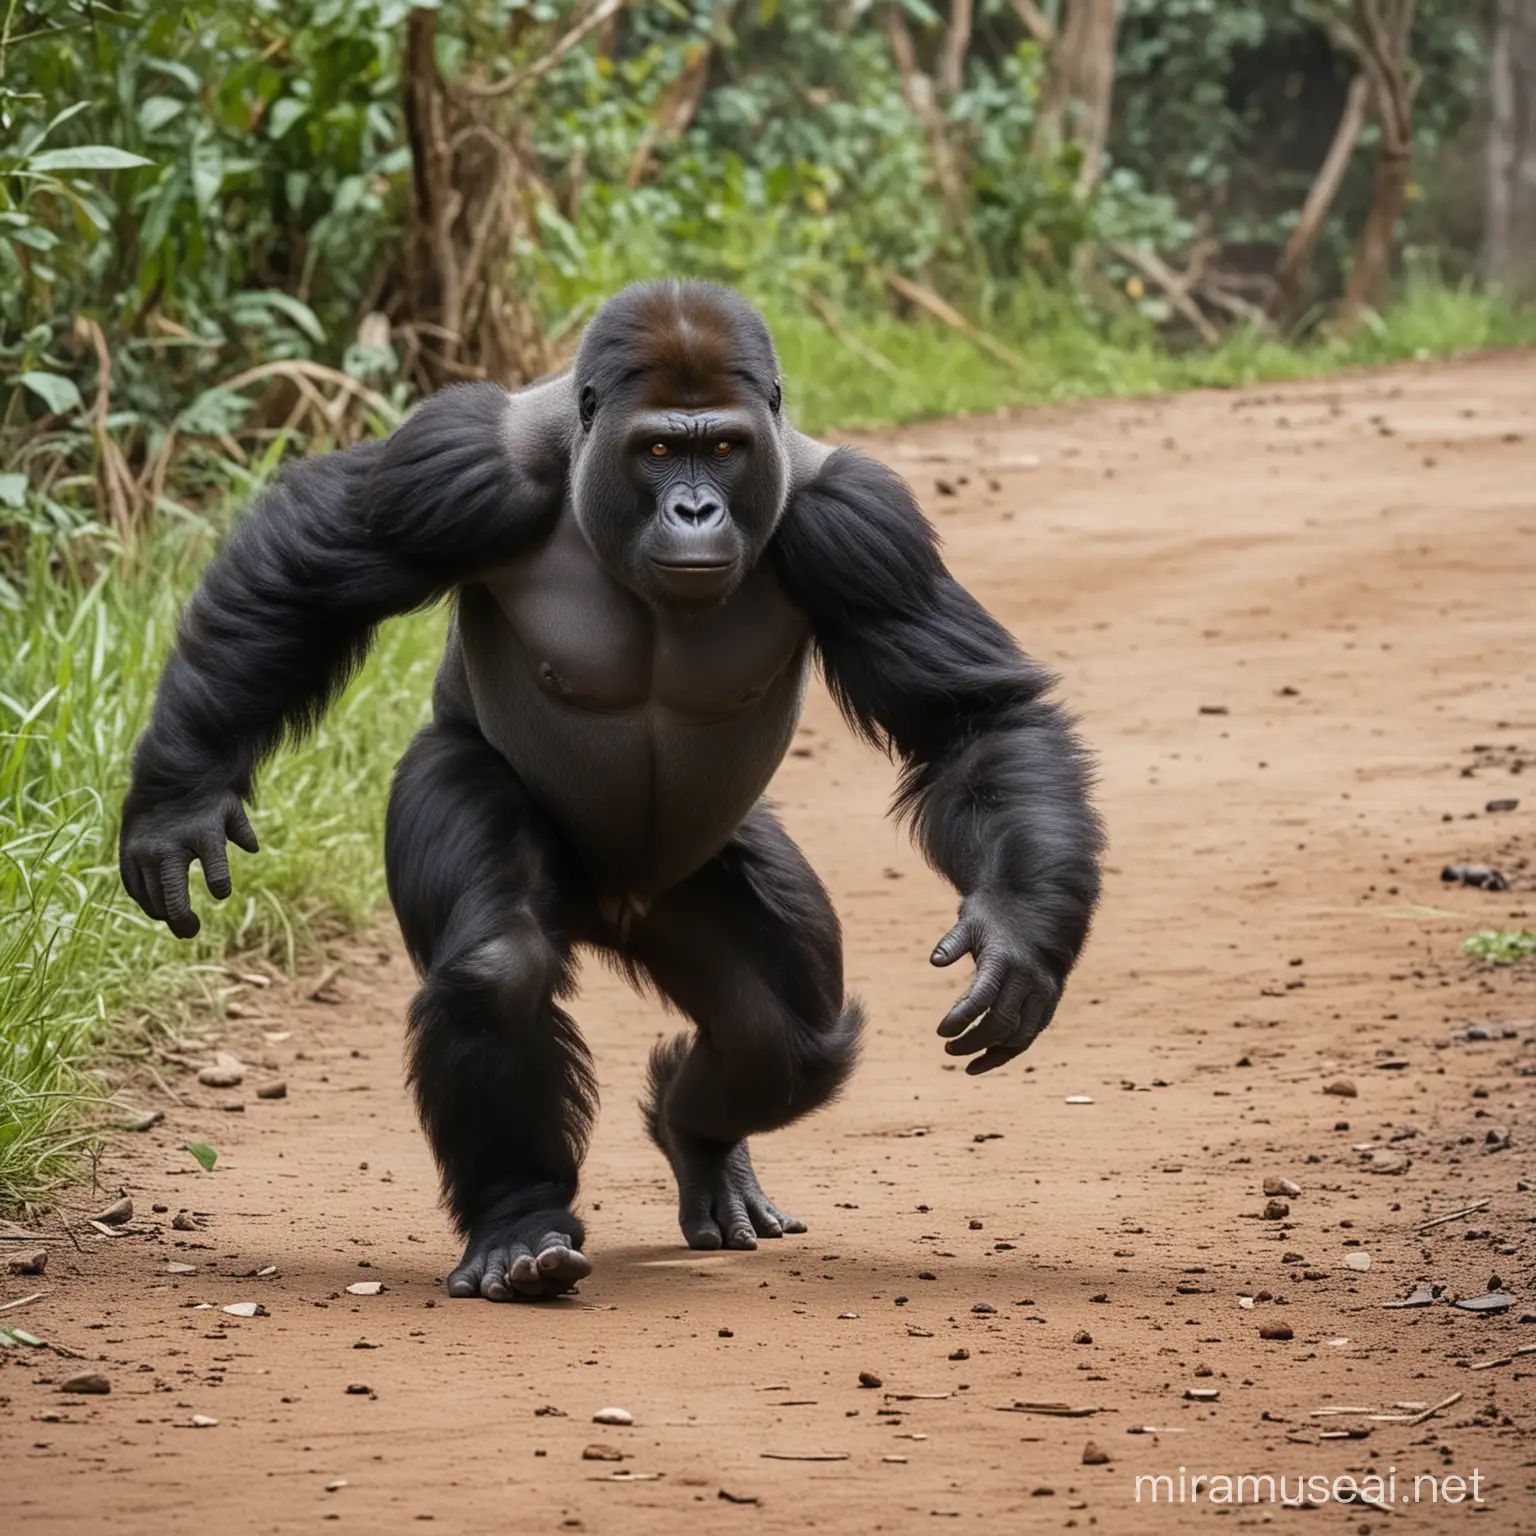 Gorilla Monkey Running Away on Four Feet